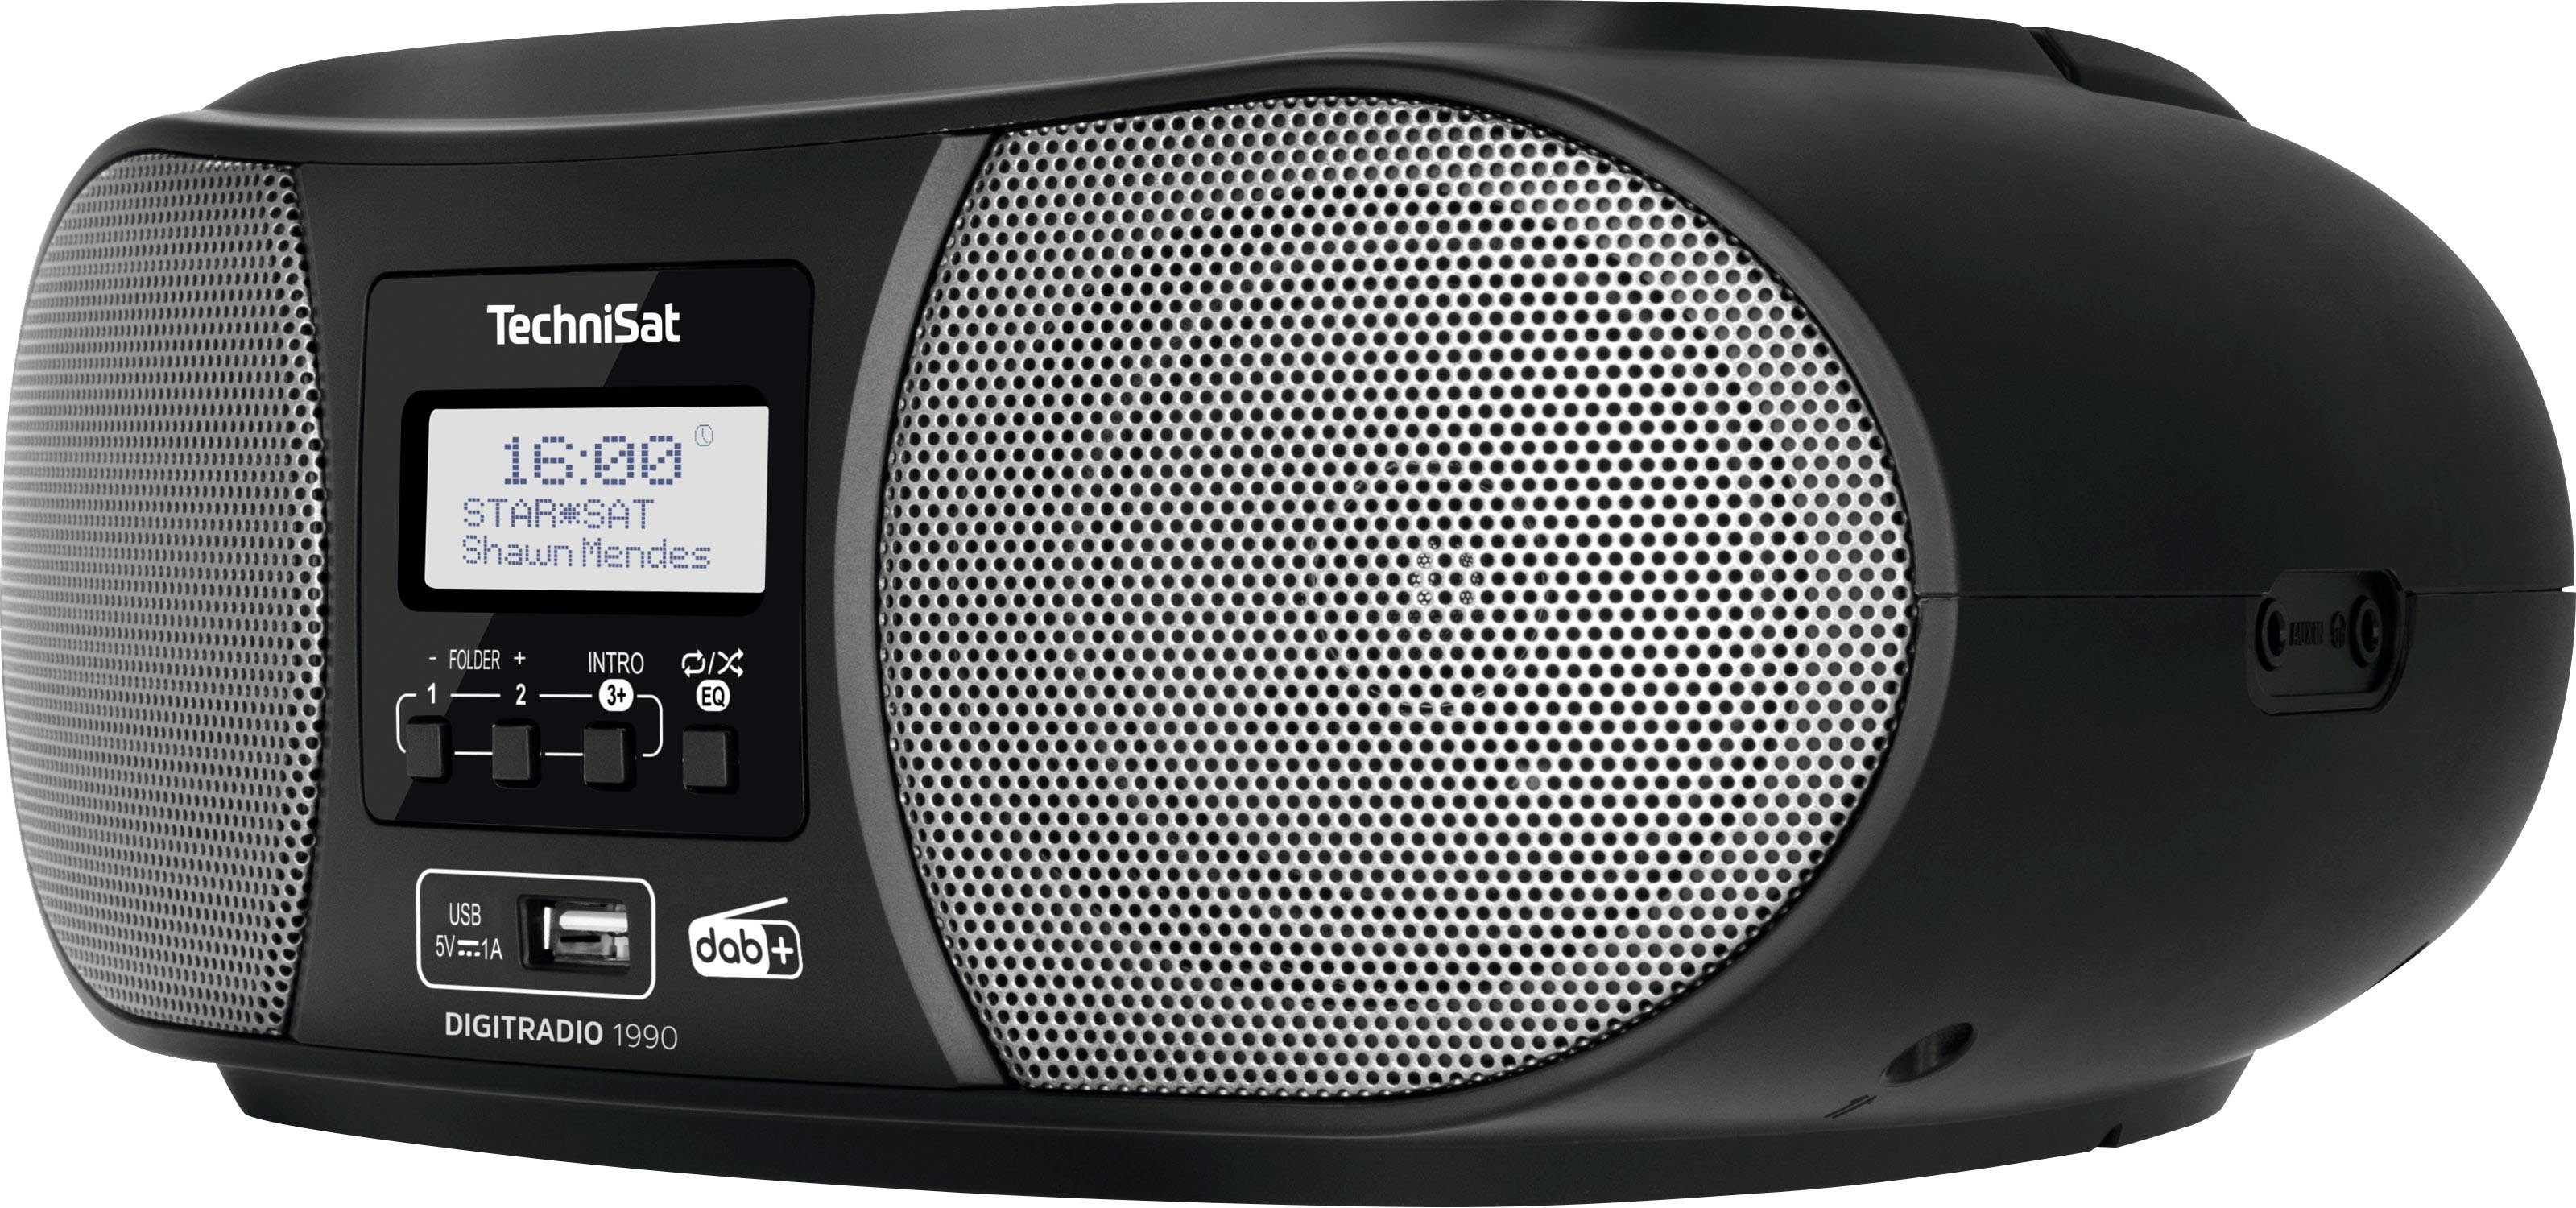 TechniSat Digitradio 1990 Stereo- (Digitalradio FM-Tuner, möglich) DAB+, (DAB), Boombox mit schwarz CD-Player, Bluetooth, UKW, USB, Batteriebetrieb